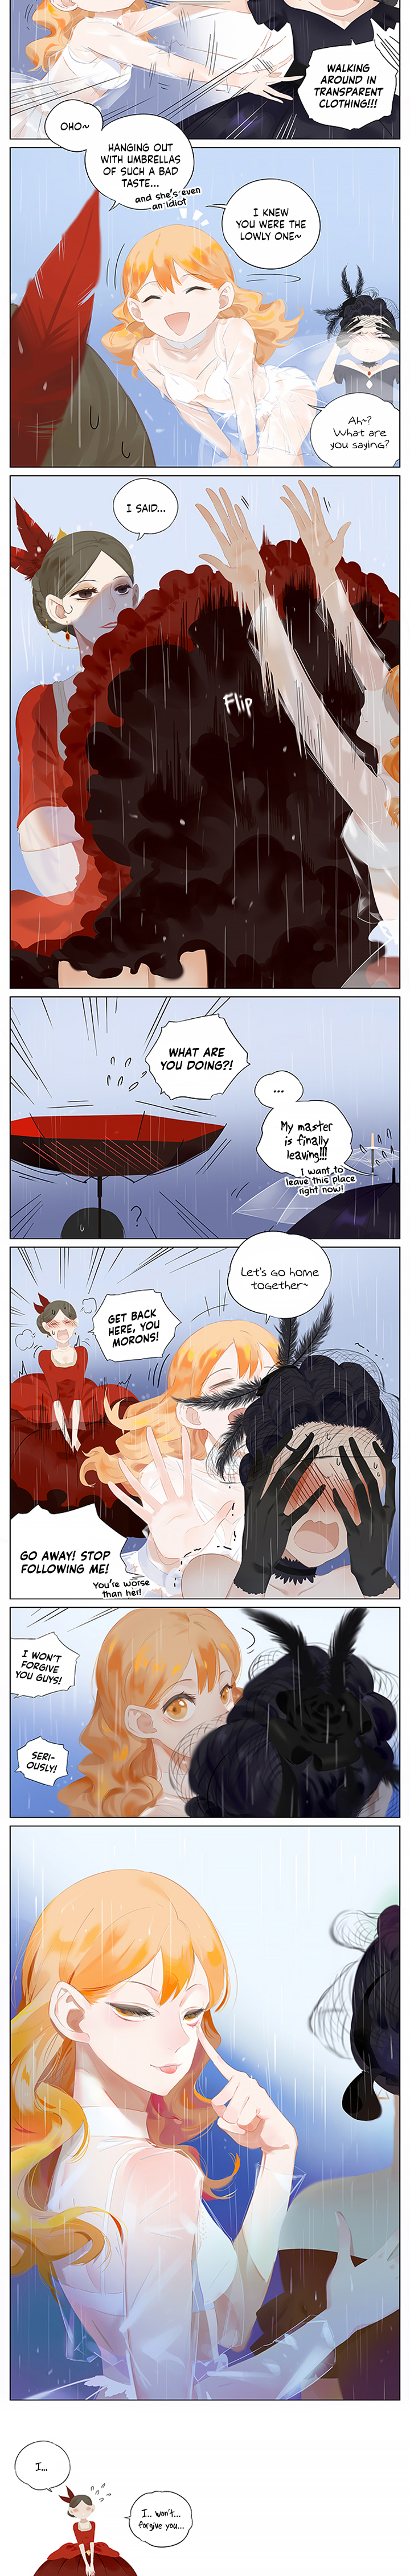 Umbrellas - Page 2